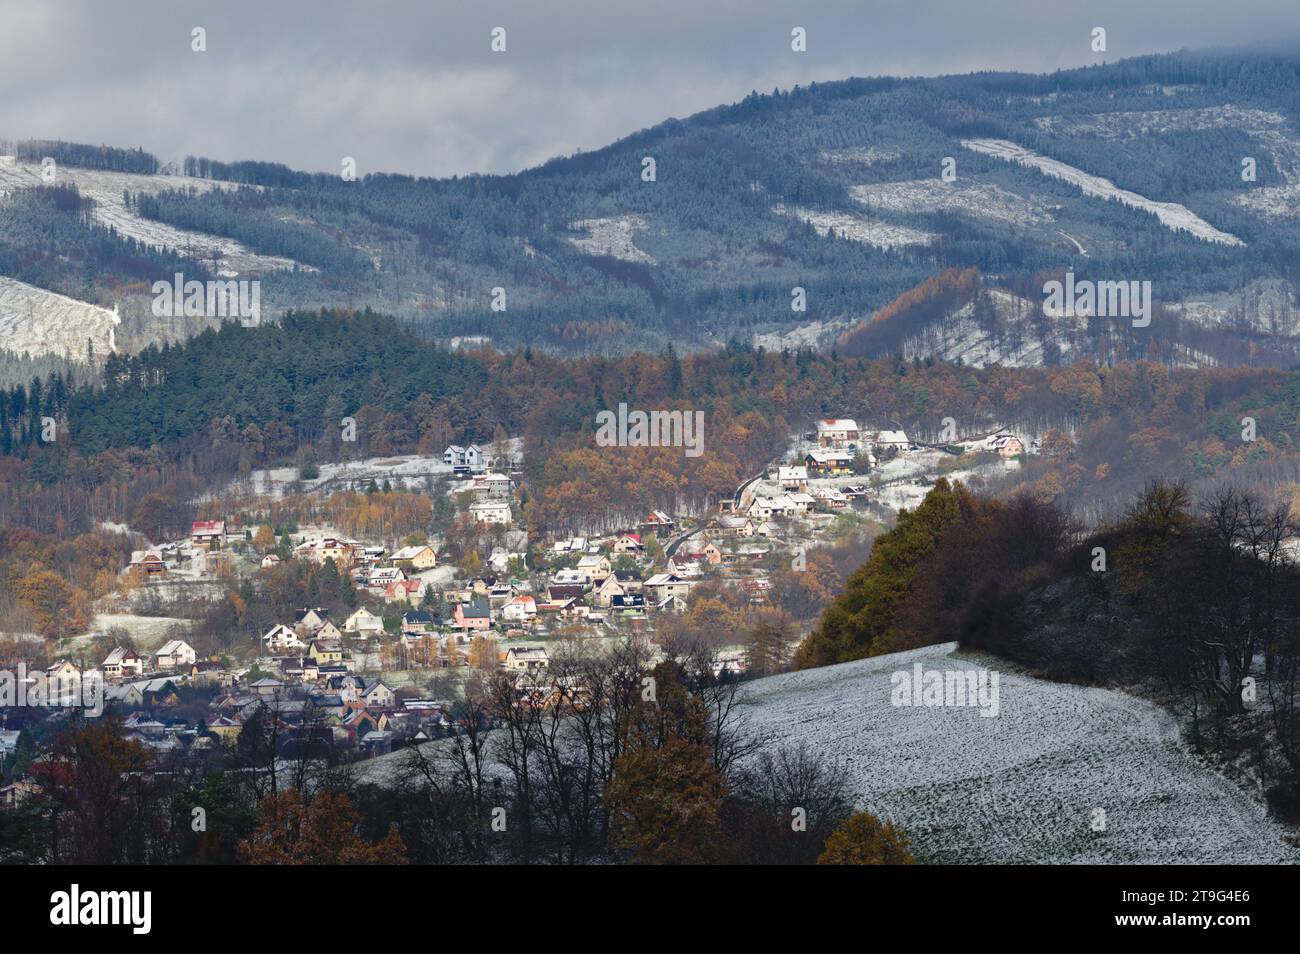 Wohngebiet in der Stadt Zubri in der Nähe von Roznov Pod Radhostem. Sehr kleine tschechische Stadt am Fuße der Ausläufer, die im Spätherbst mit dem ersten Schnee bedeckt ist. Stockfoto